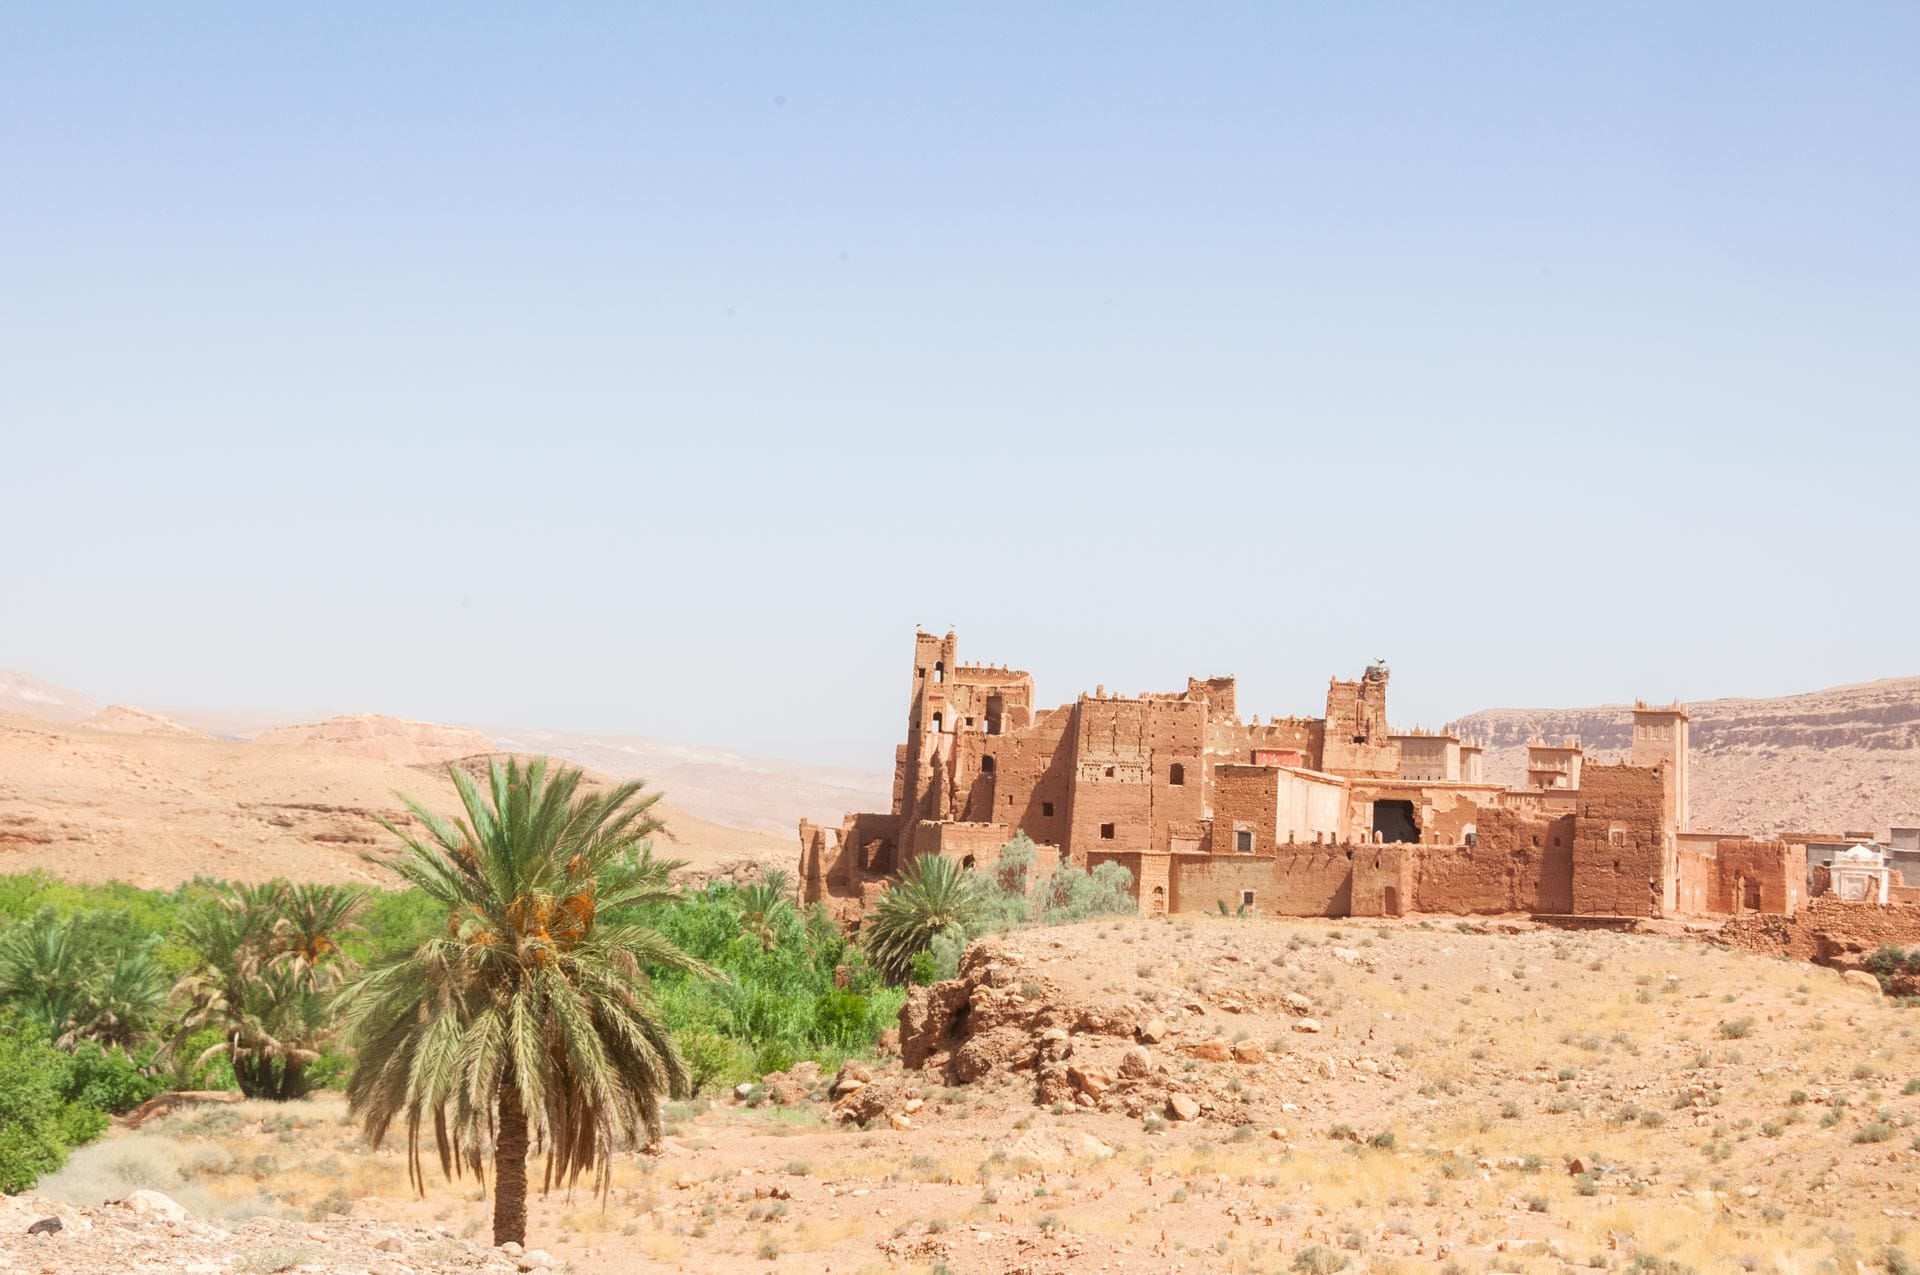 Strasse der Kasbah in Marokko